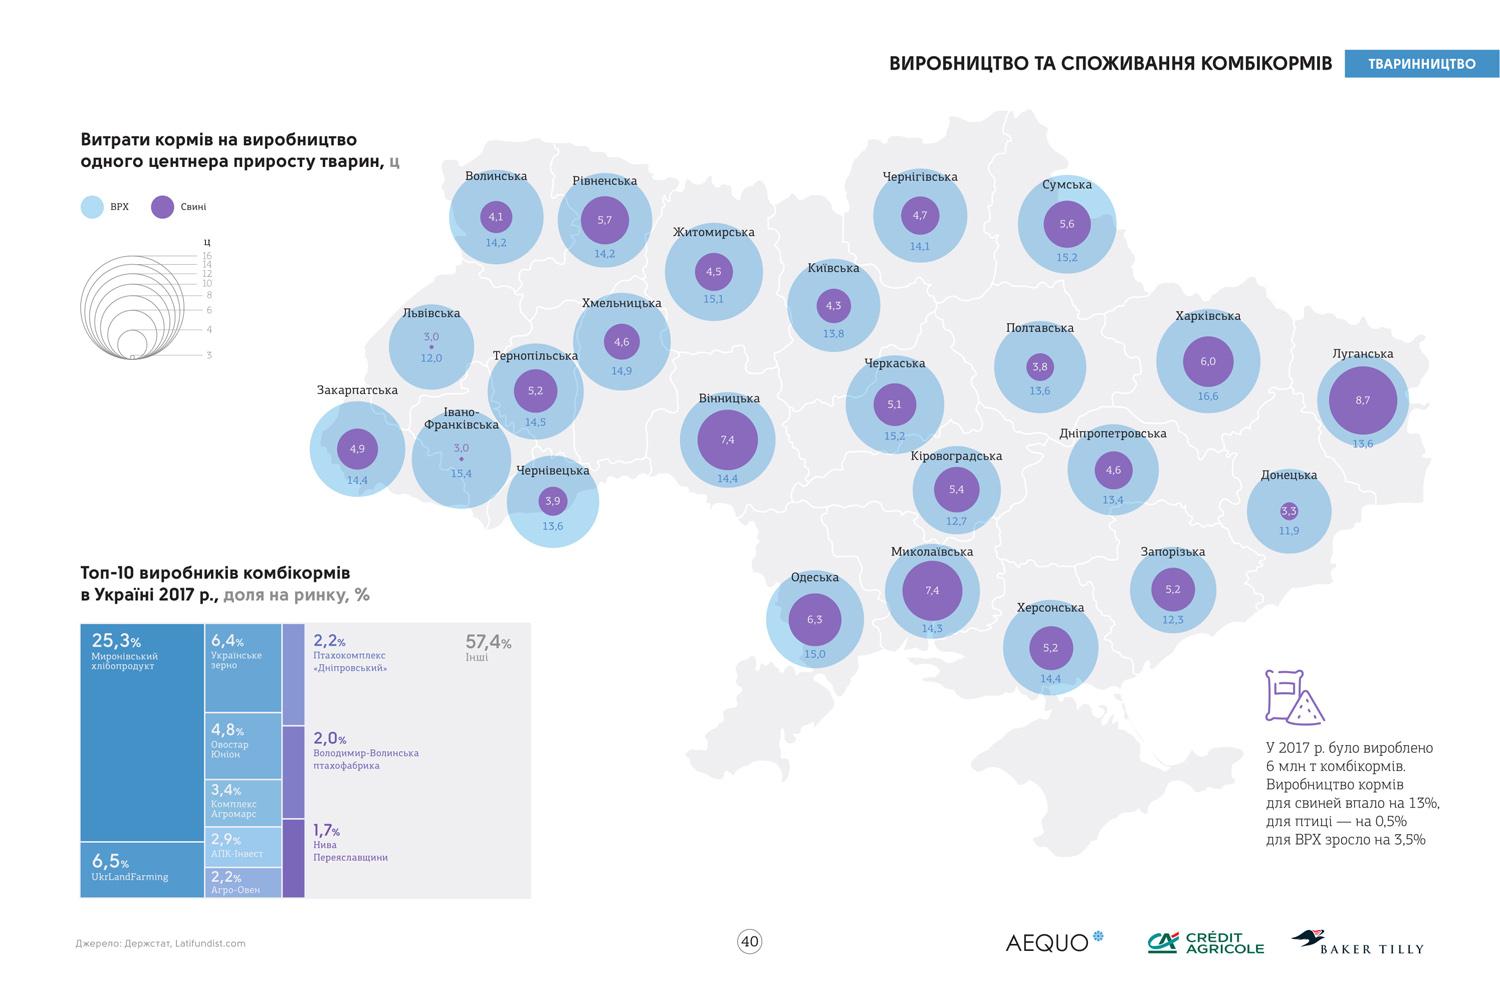 Источник данных: инфографический справочник «Агробизнес Украины 2017/18» (кликните для увеличения)